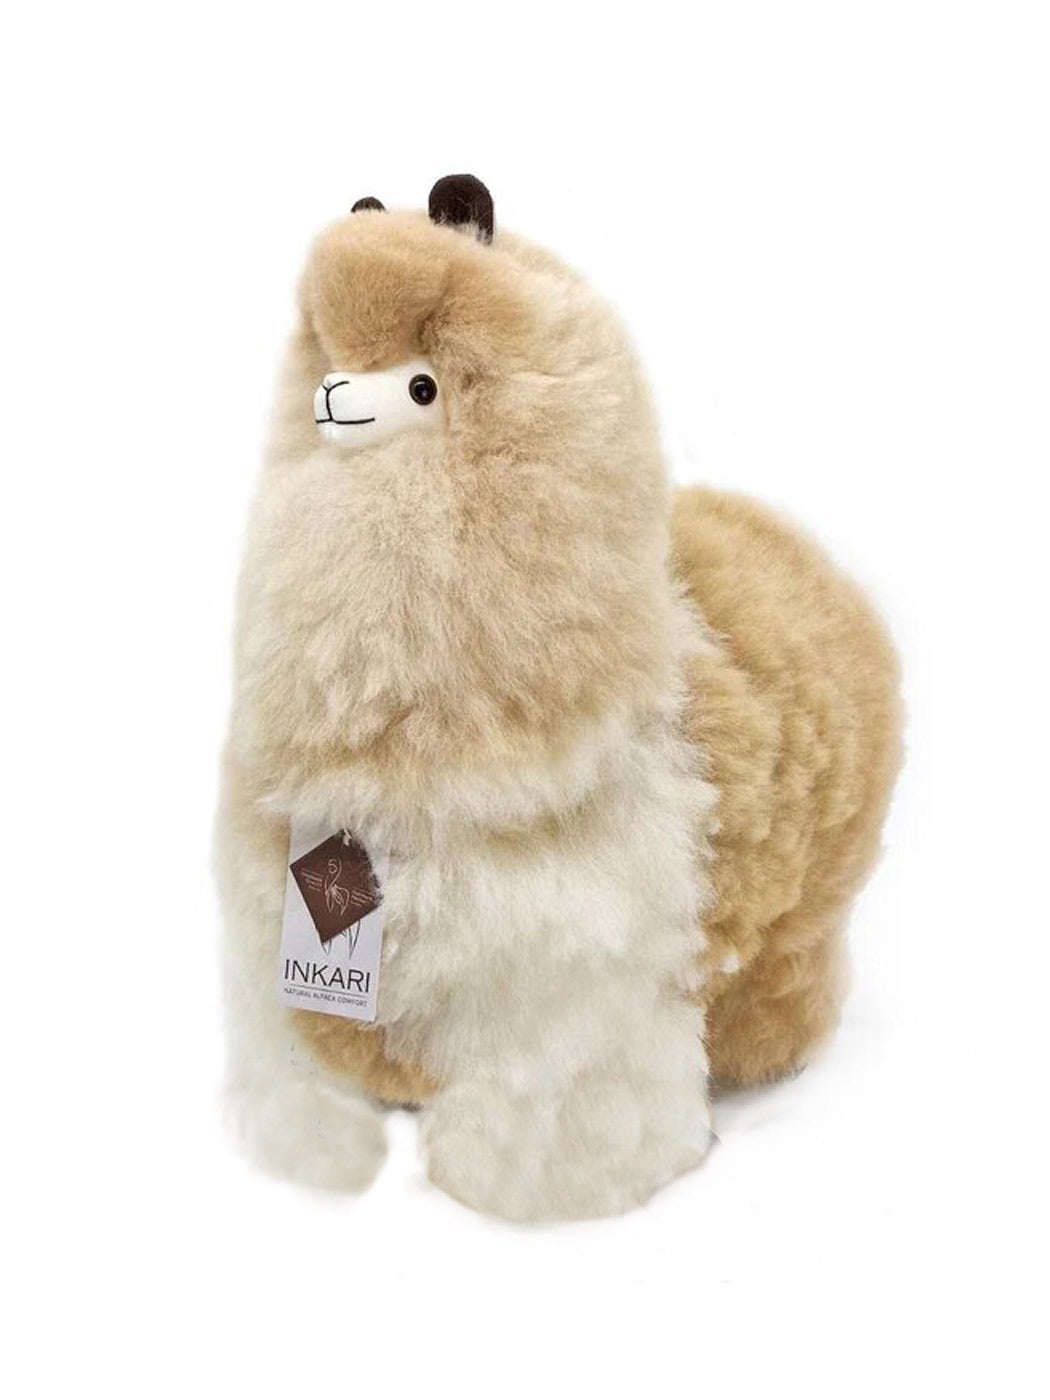 Inkari Alpaca soft toy-SAHARA-Large 50cm